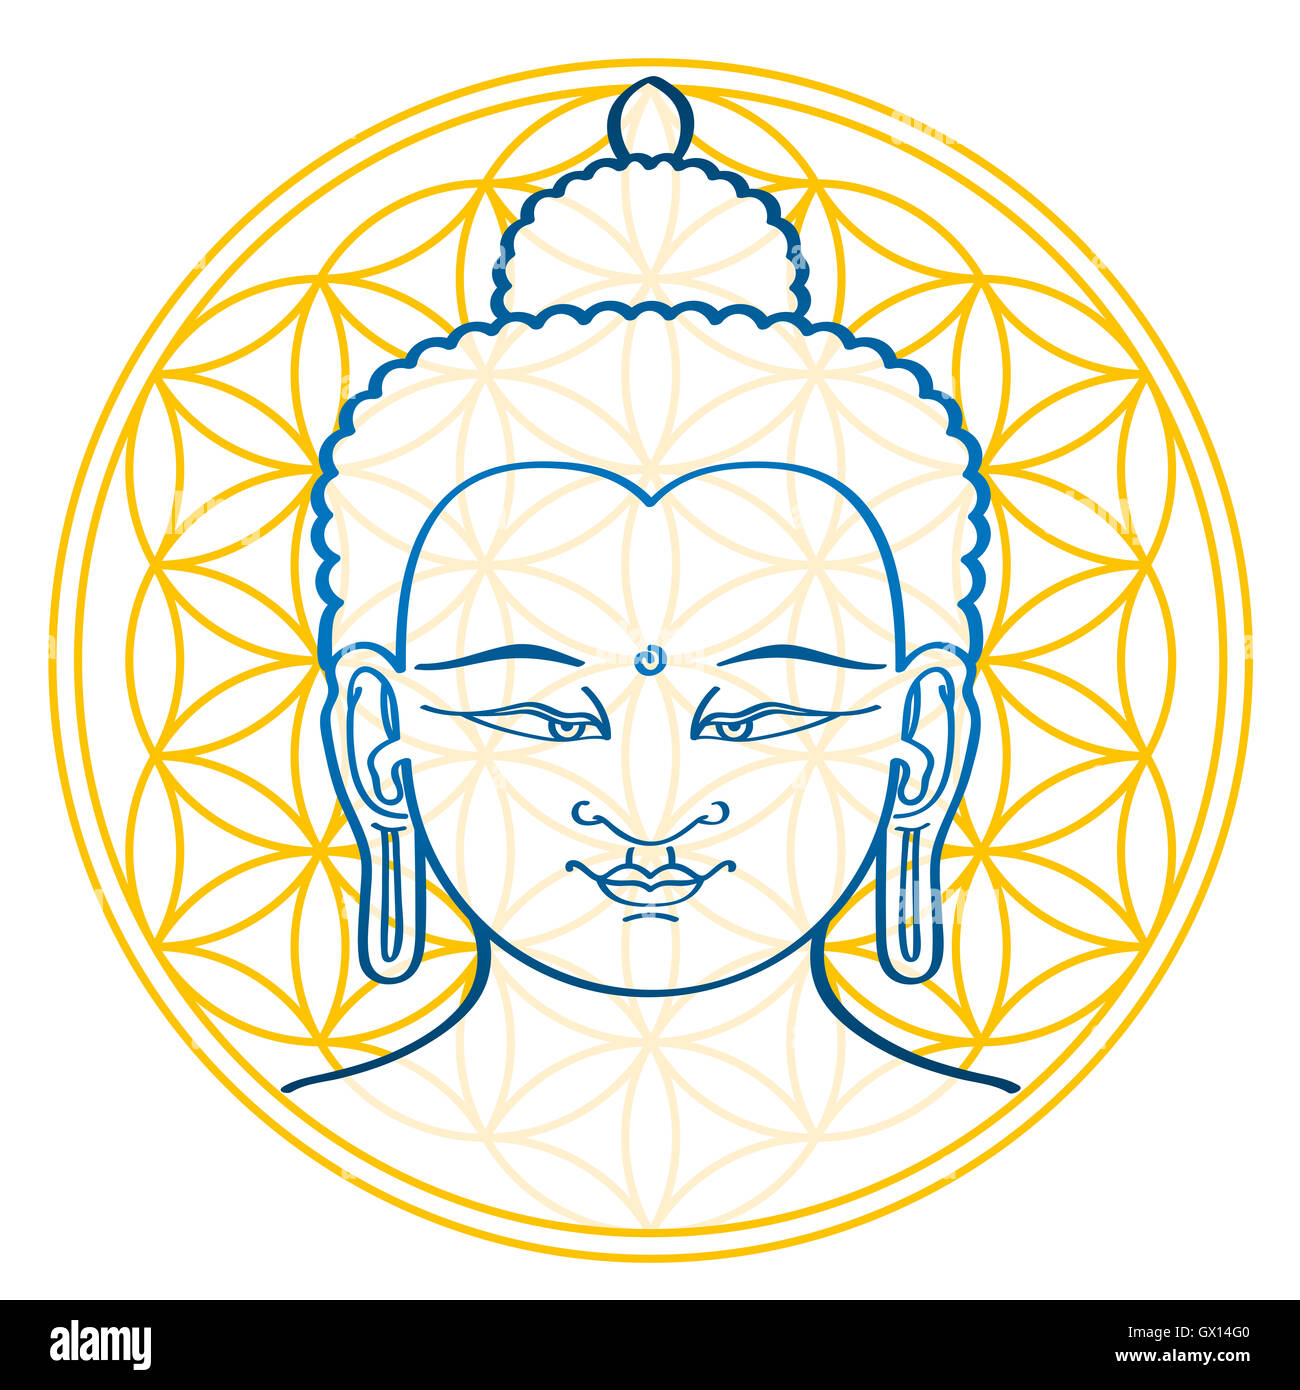 Buddha und die Blume des Lebens, eine geometrische Figur und altes Symbol, bestehend aus mehreren gleichmäßig, überlappende Kreise. Stockfoto